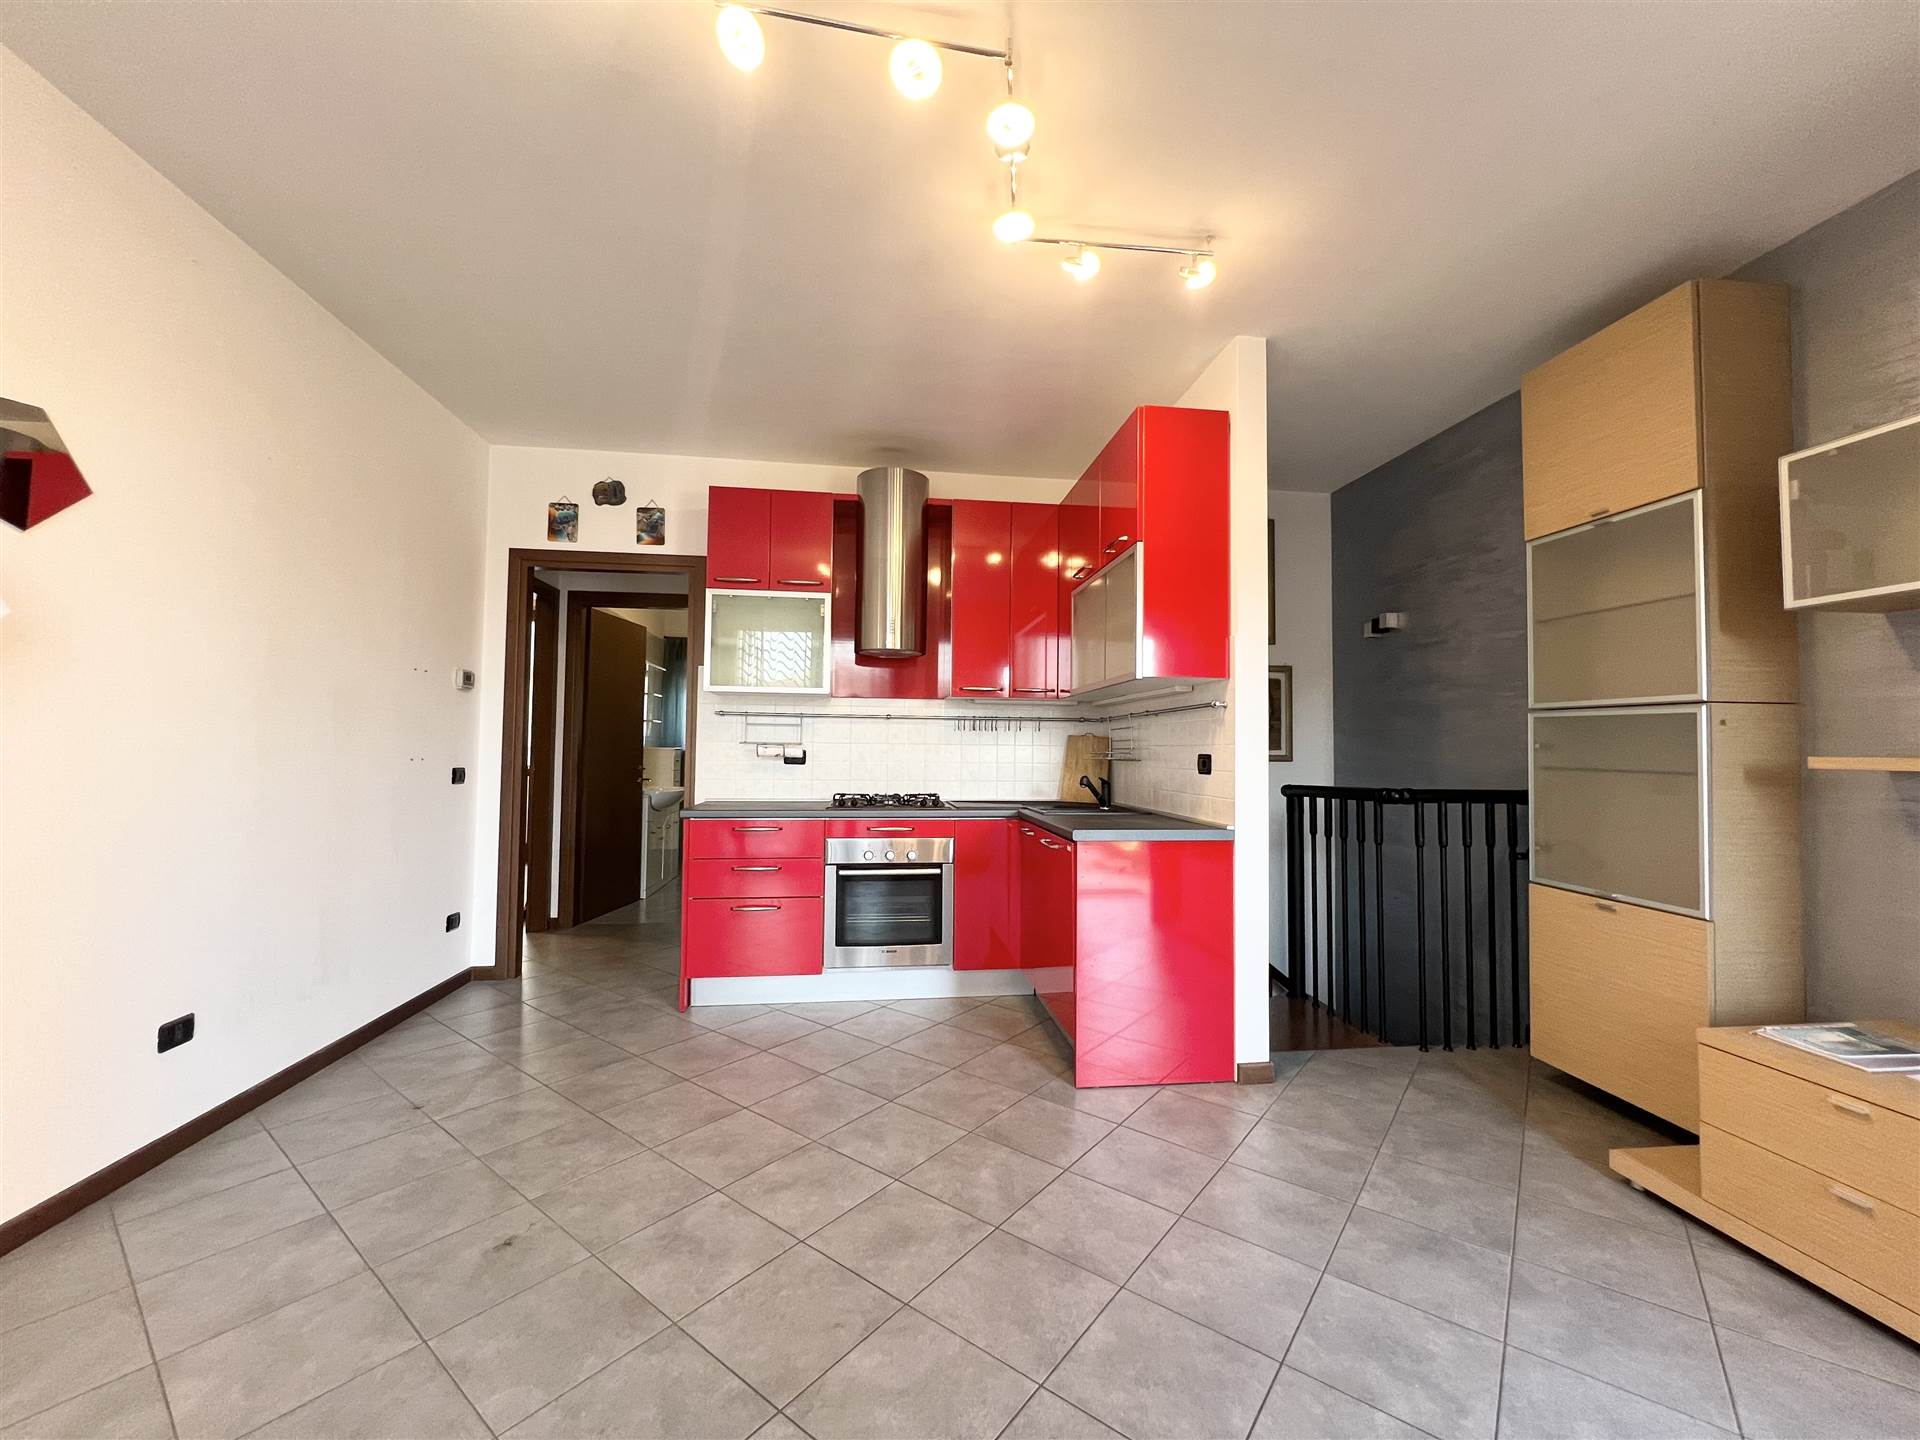 Appartamento in vendita a Lurano, 2 locali, prezzo € 125.000 | PortaleAgenzieImmobiliari.it